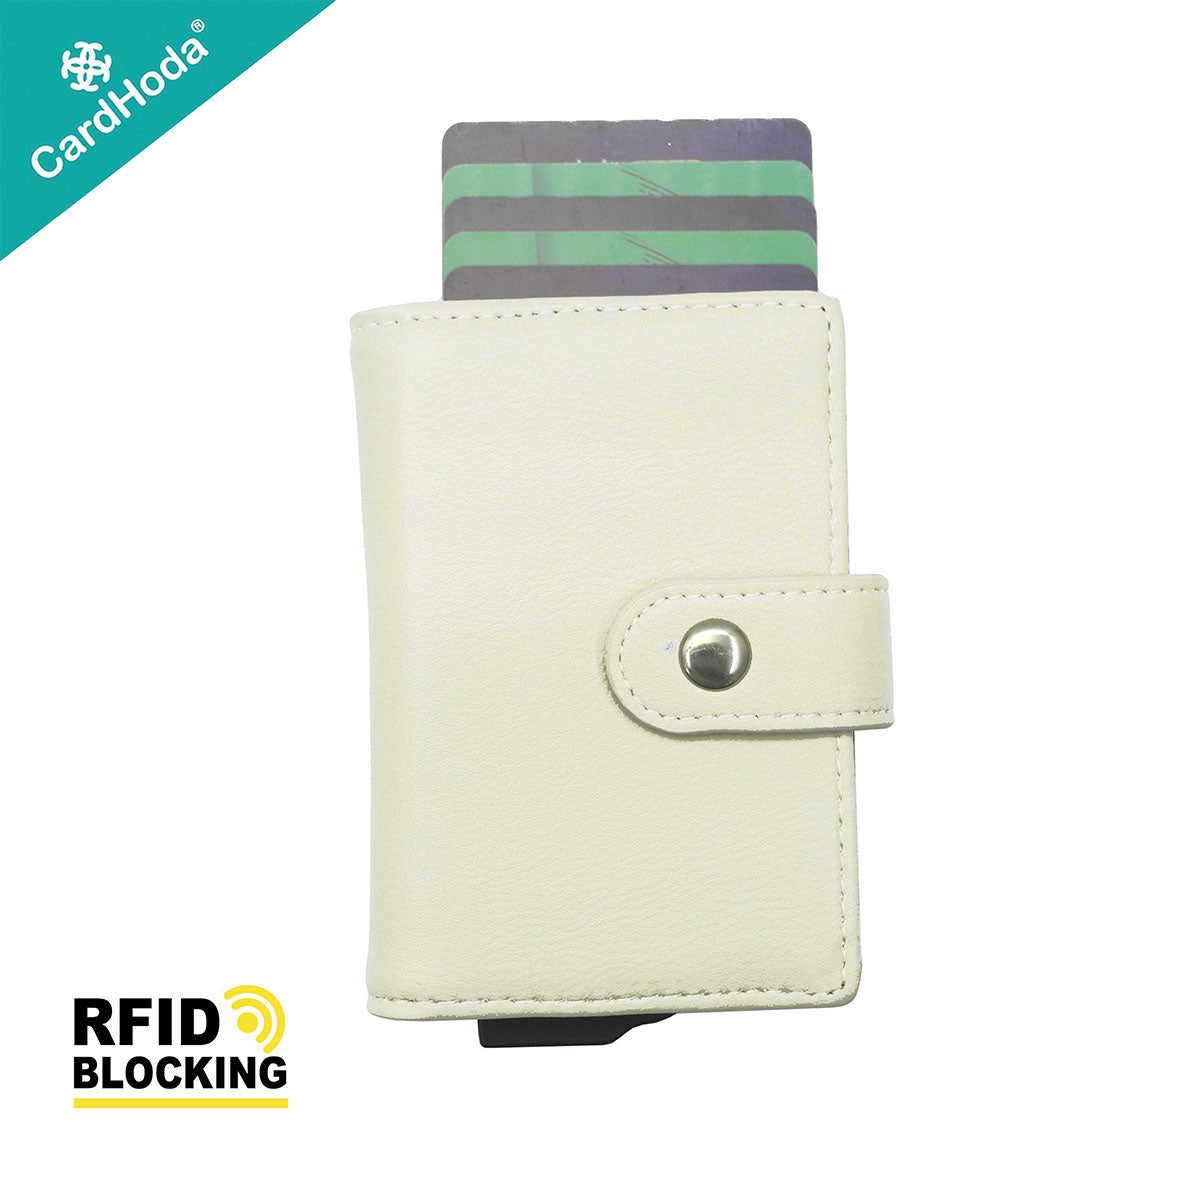 [寄海外] CardHoda - Mini RFID 防盜卡 PU 皮款銀包（玄米灰 / 迷霧灰 / 可可啡）H10023-BON